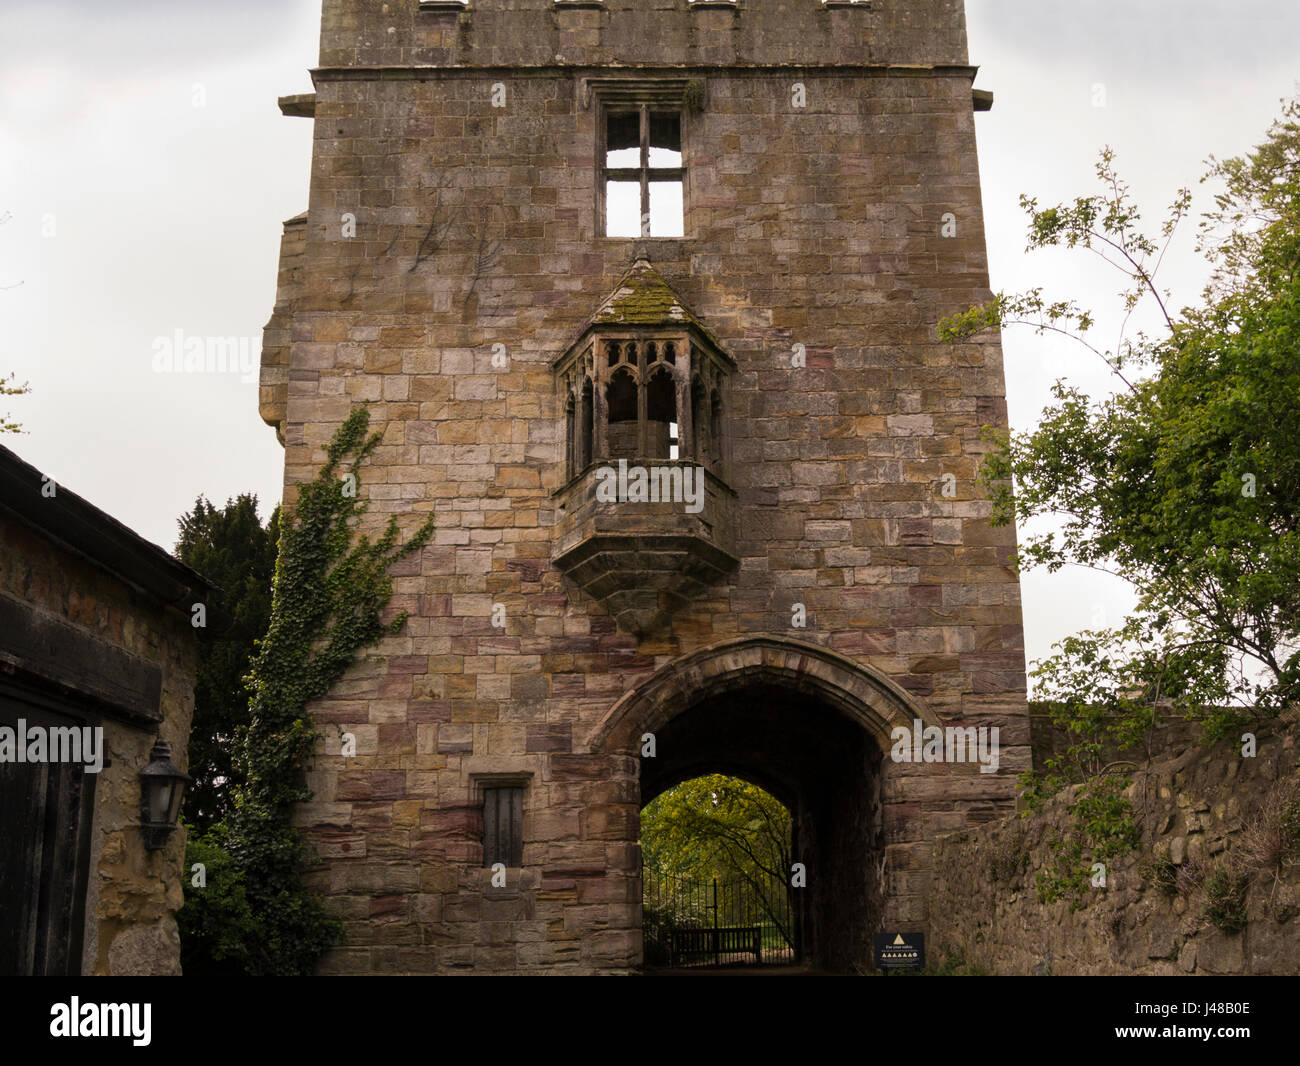 Marmion Tower 15thc Gatehouse à manoir perdu West Yorkshire Angleterre Nord Tanfield UK de la projection de l'oriel Banque D'Images